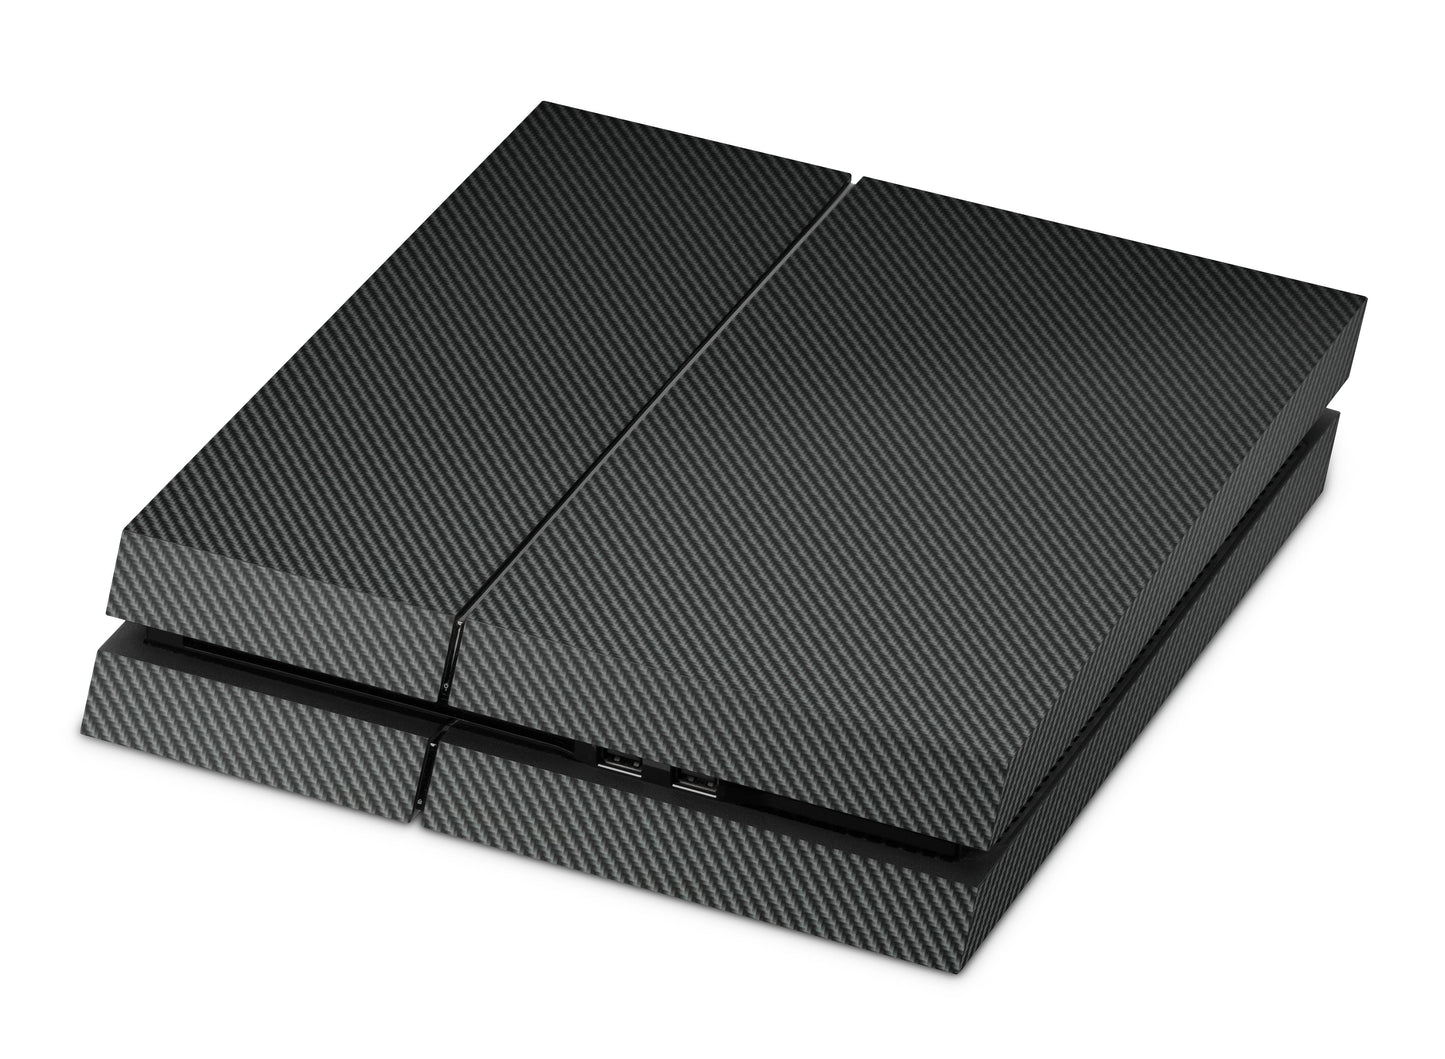 Playstation 4 Skin & Wrap Design Aufkleber Folie für PS4 Konsole 1.Generation carbon Aufkleber skins4u   